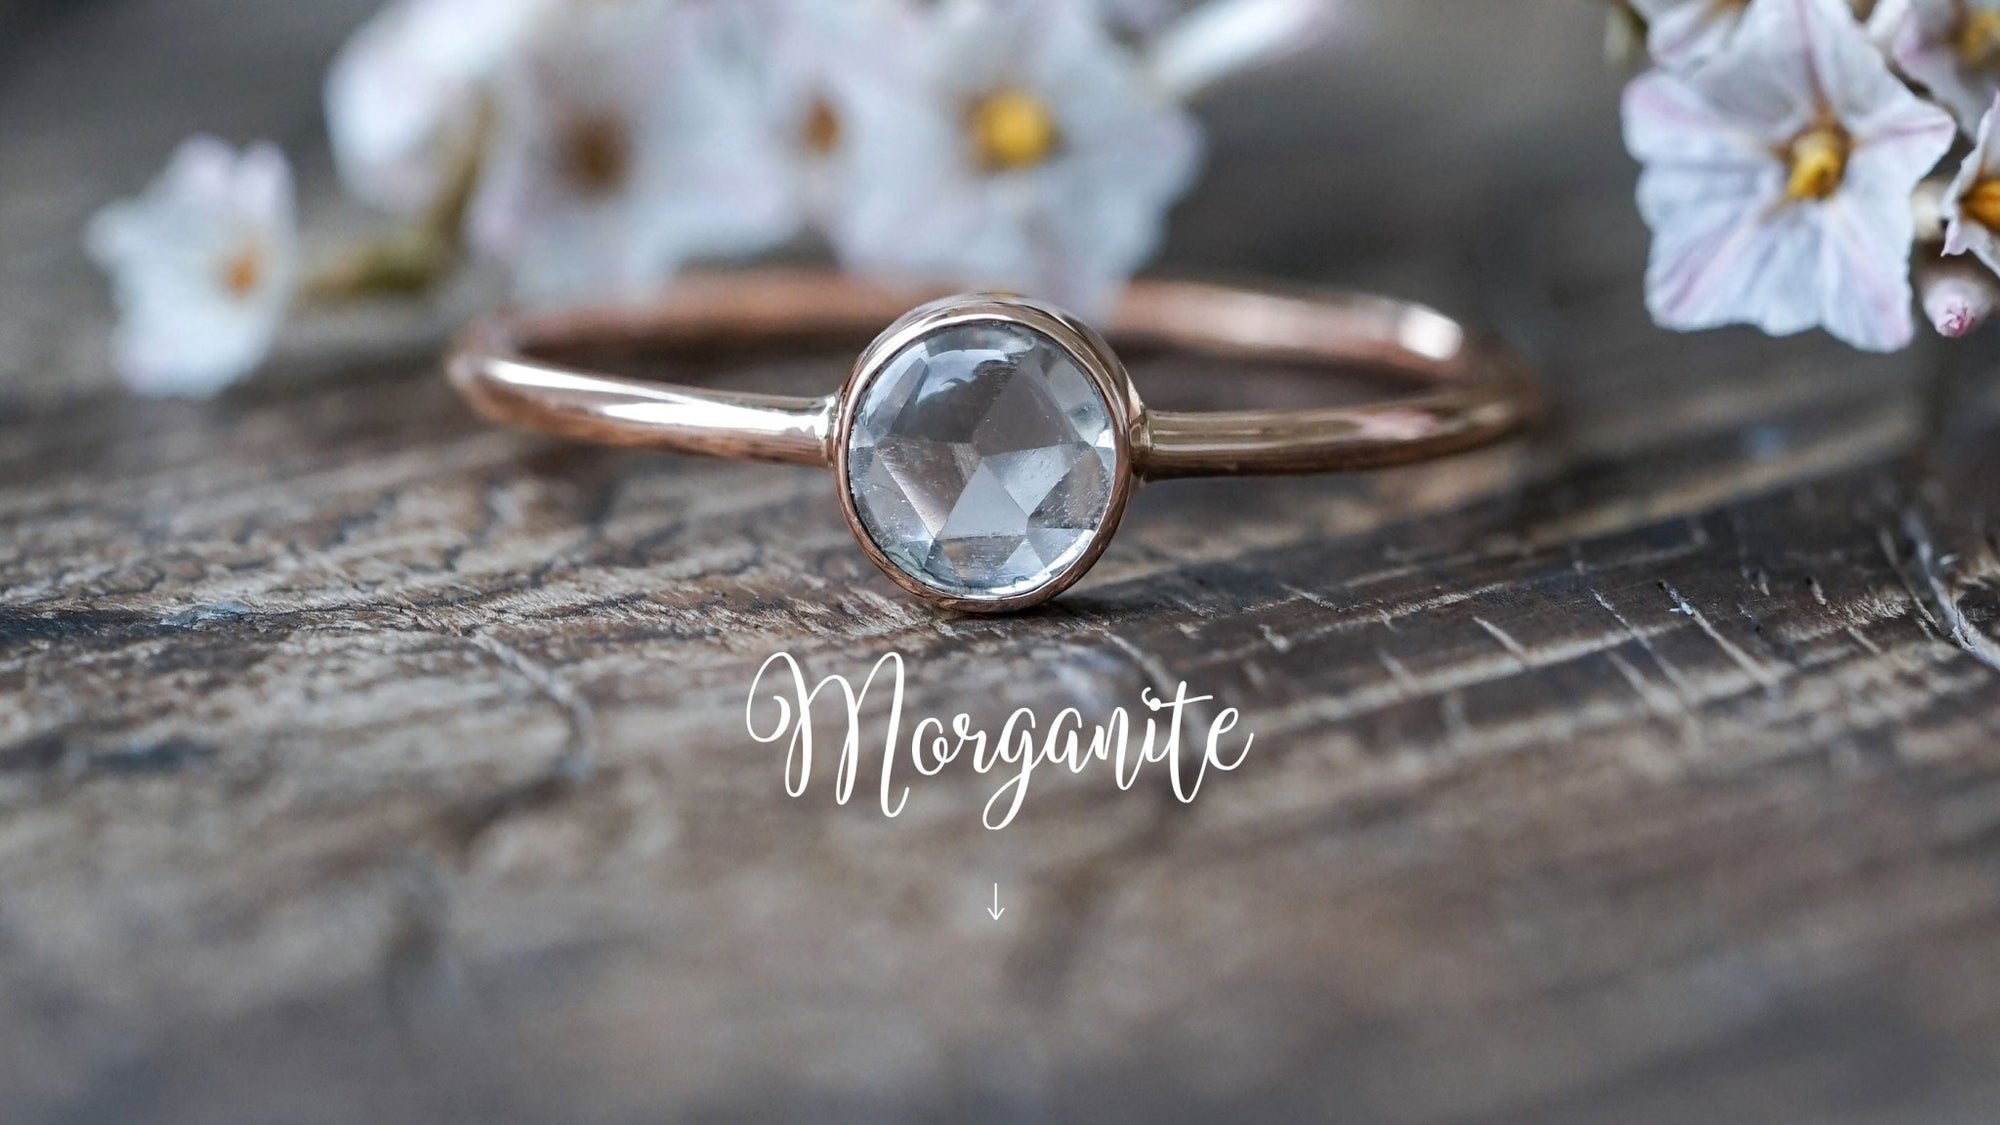 Morganite Jewelry